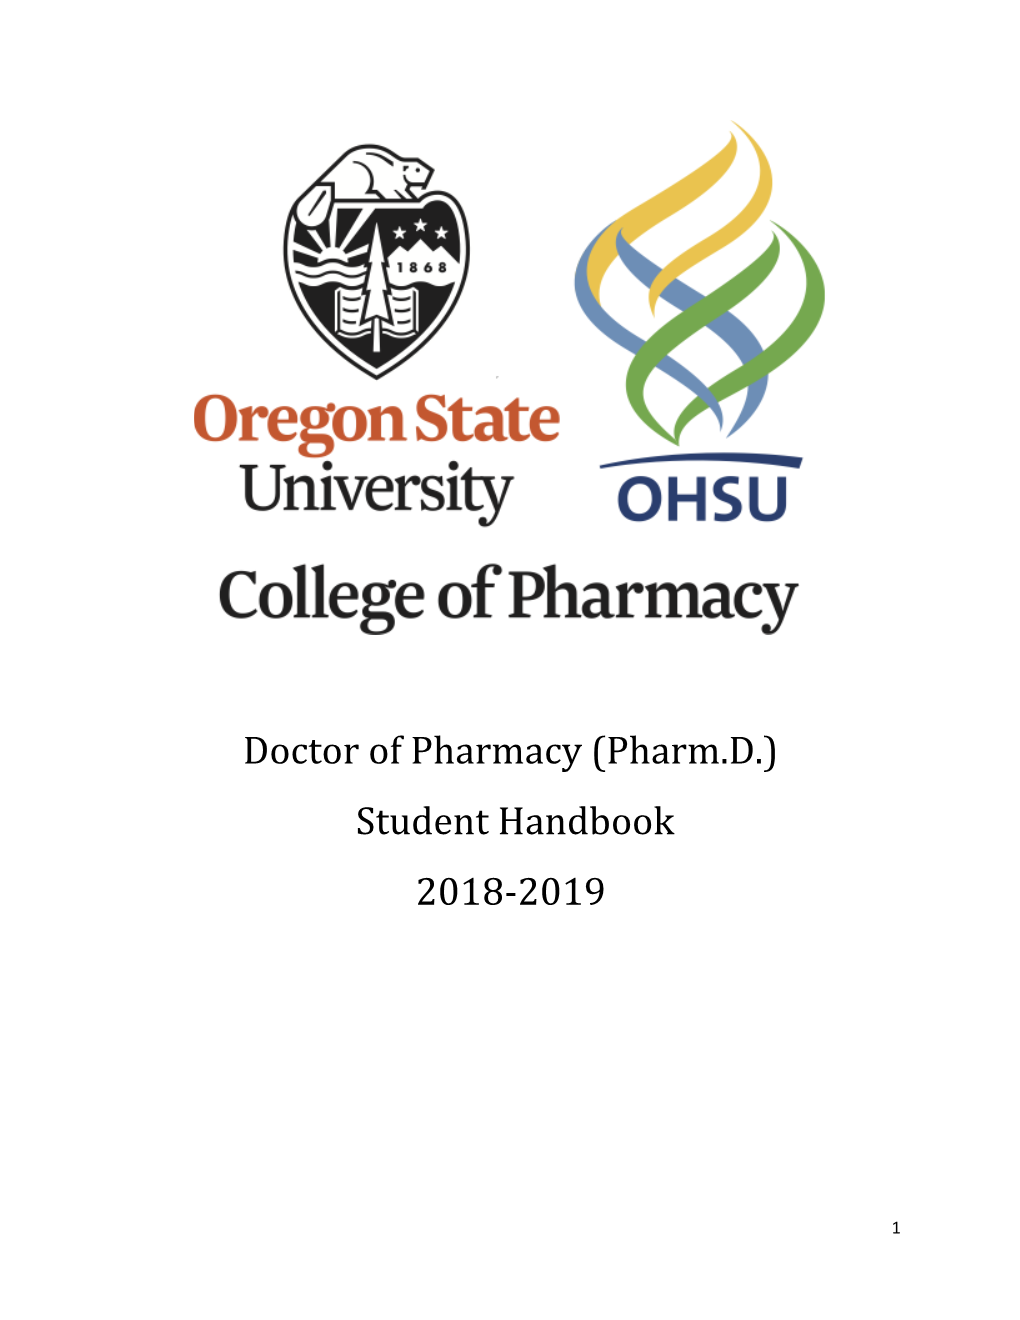 Doctor of Pharmacy (Pharm.D.) Student Handbook 2018-2019